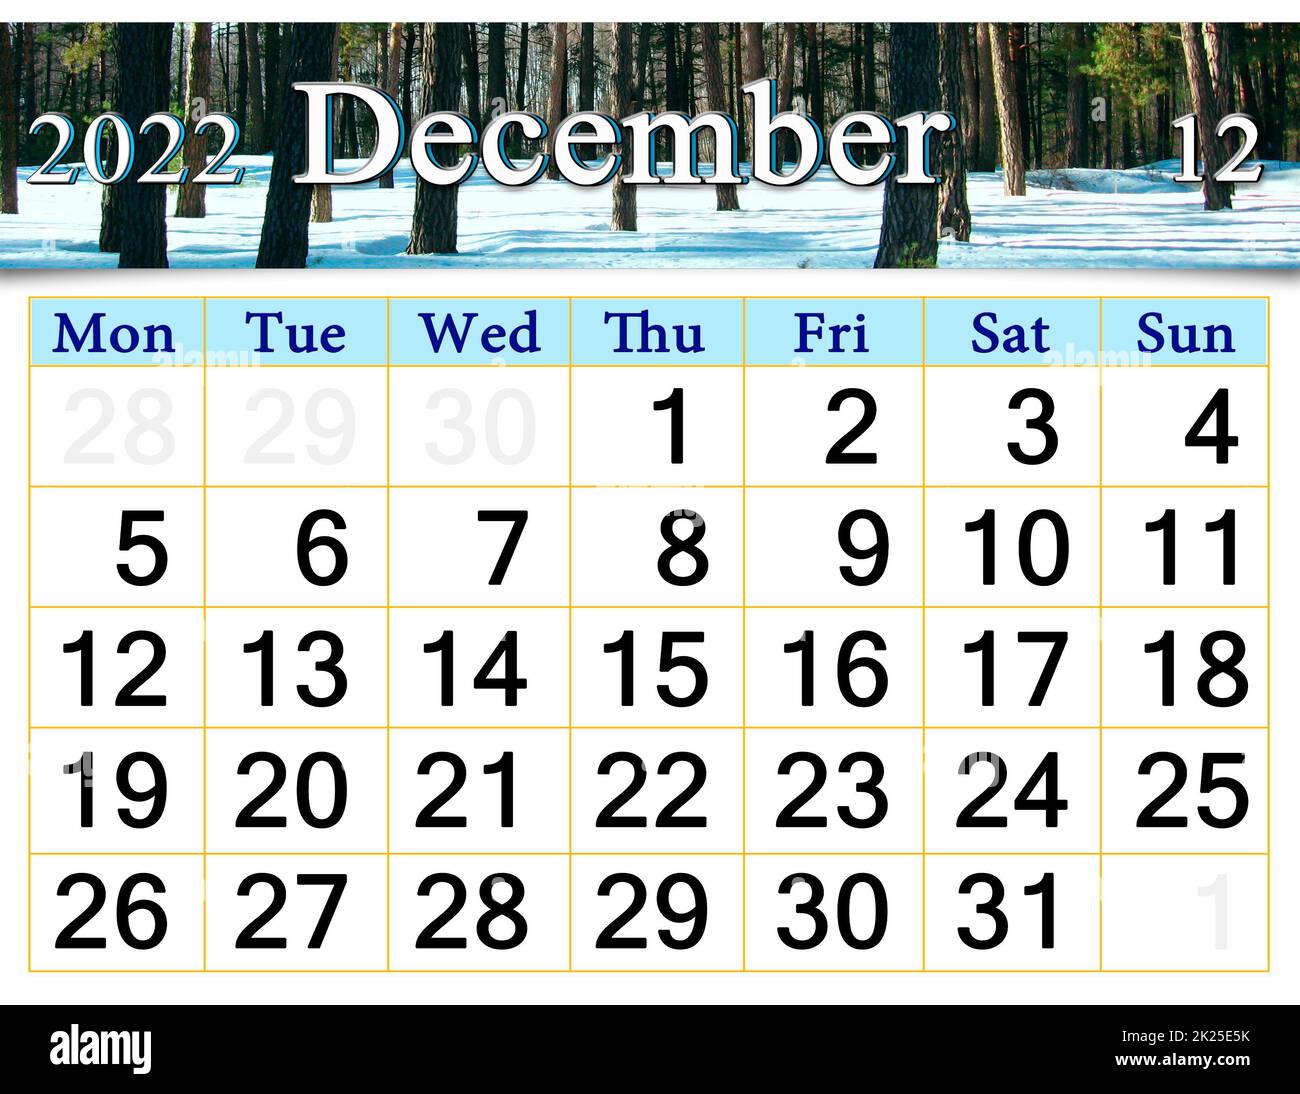 Calendario del 2022 dicembre con immagine della pineta di wintter coperta di neve. Foto Stock